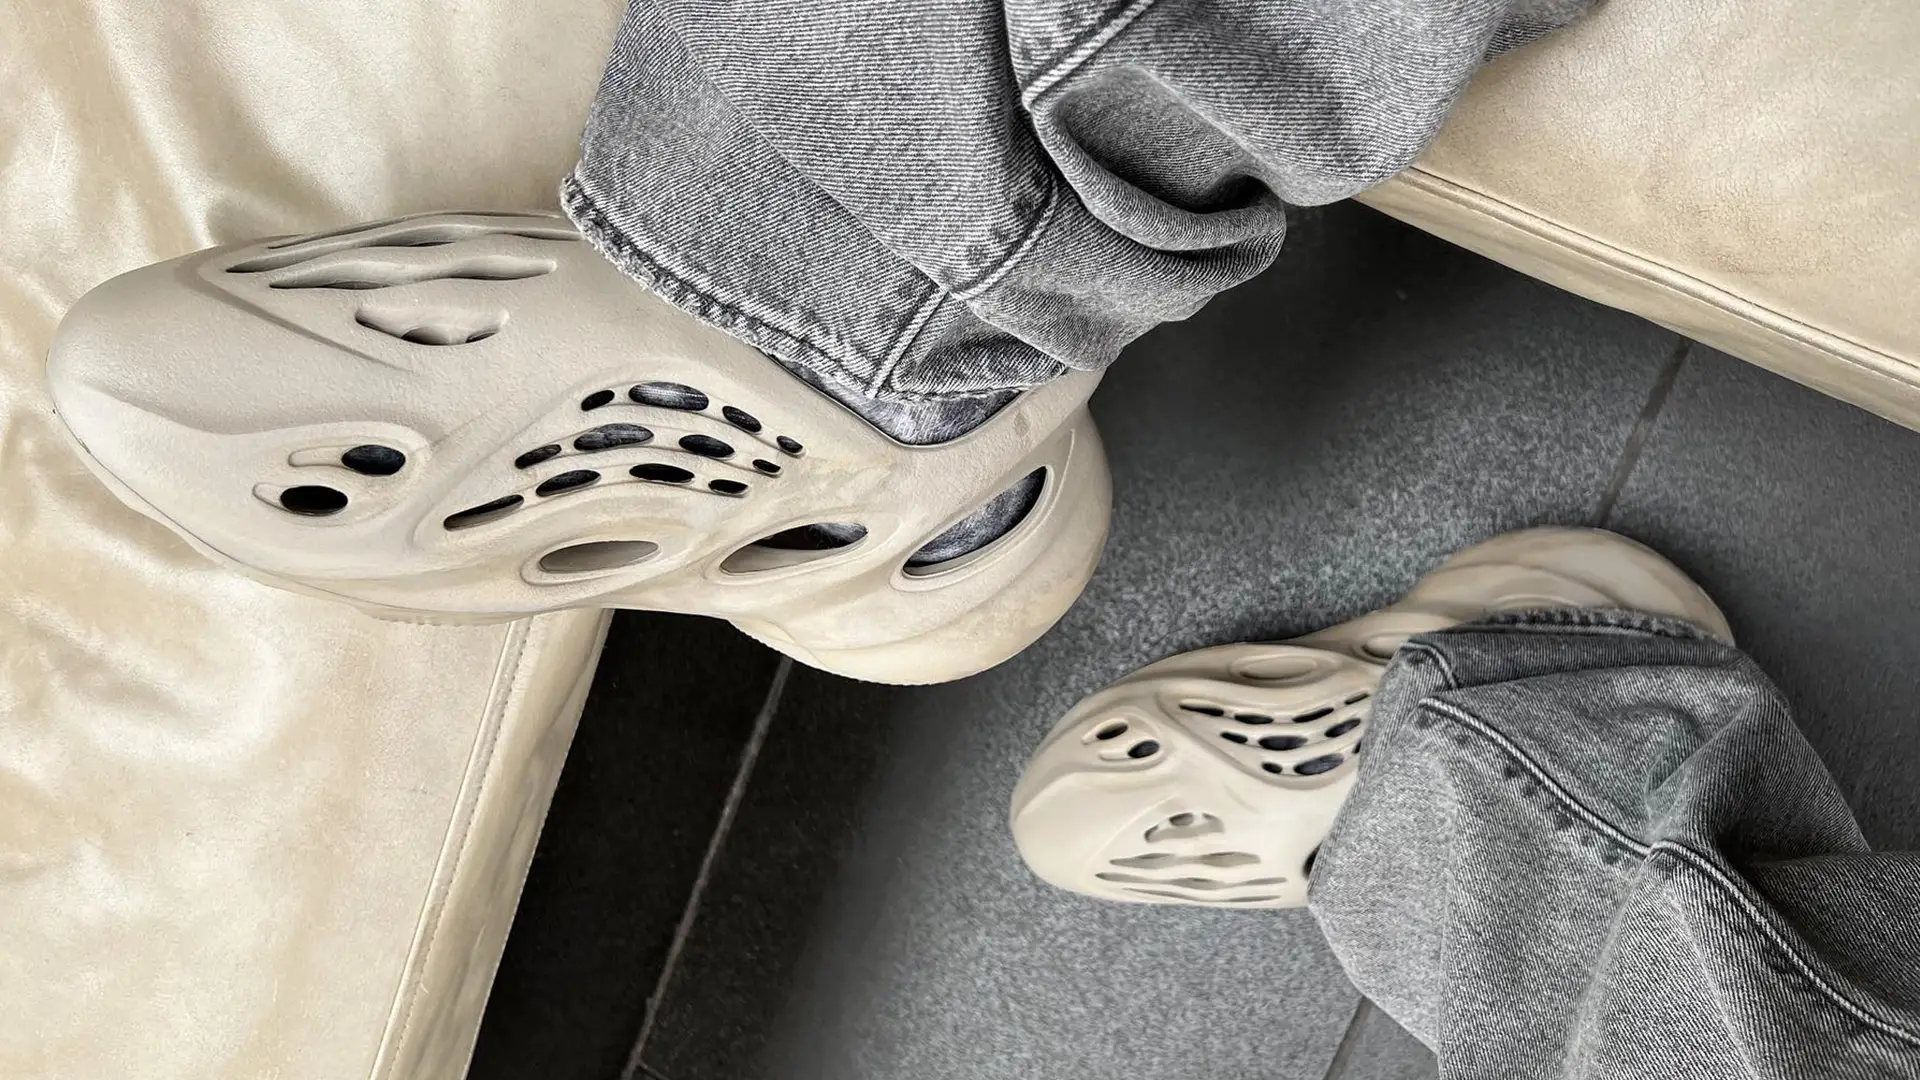 Adidas Yeezy Foam Runner Stone Salt Review & on feet! 